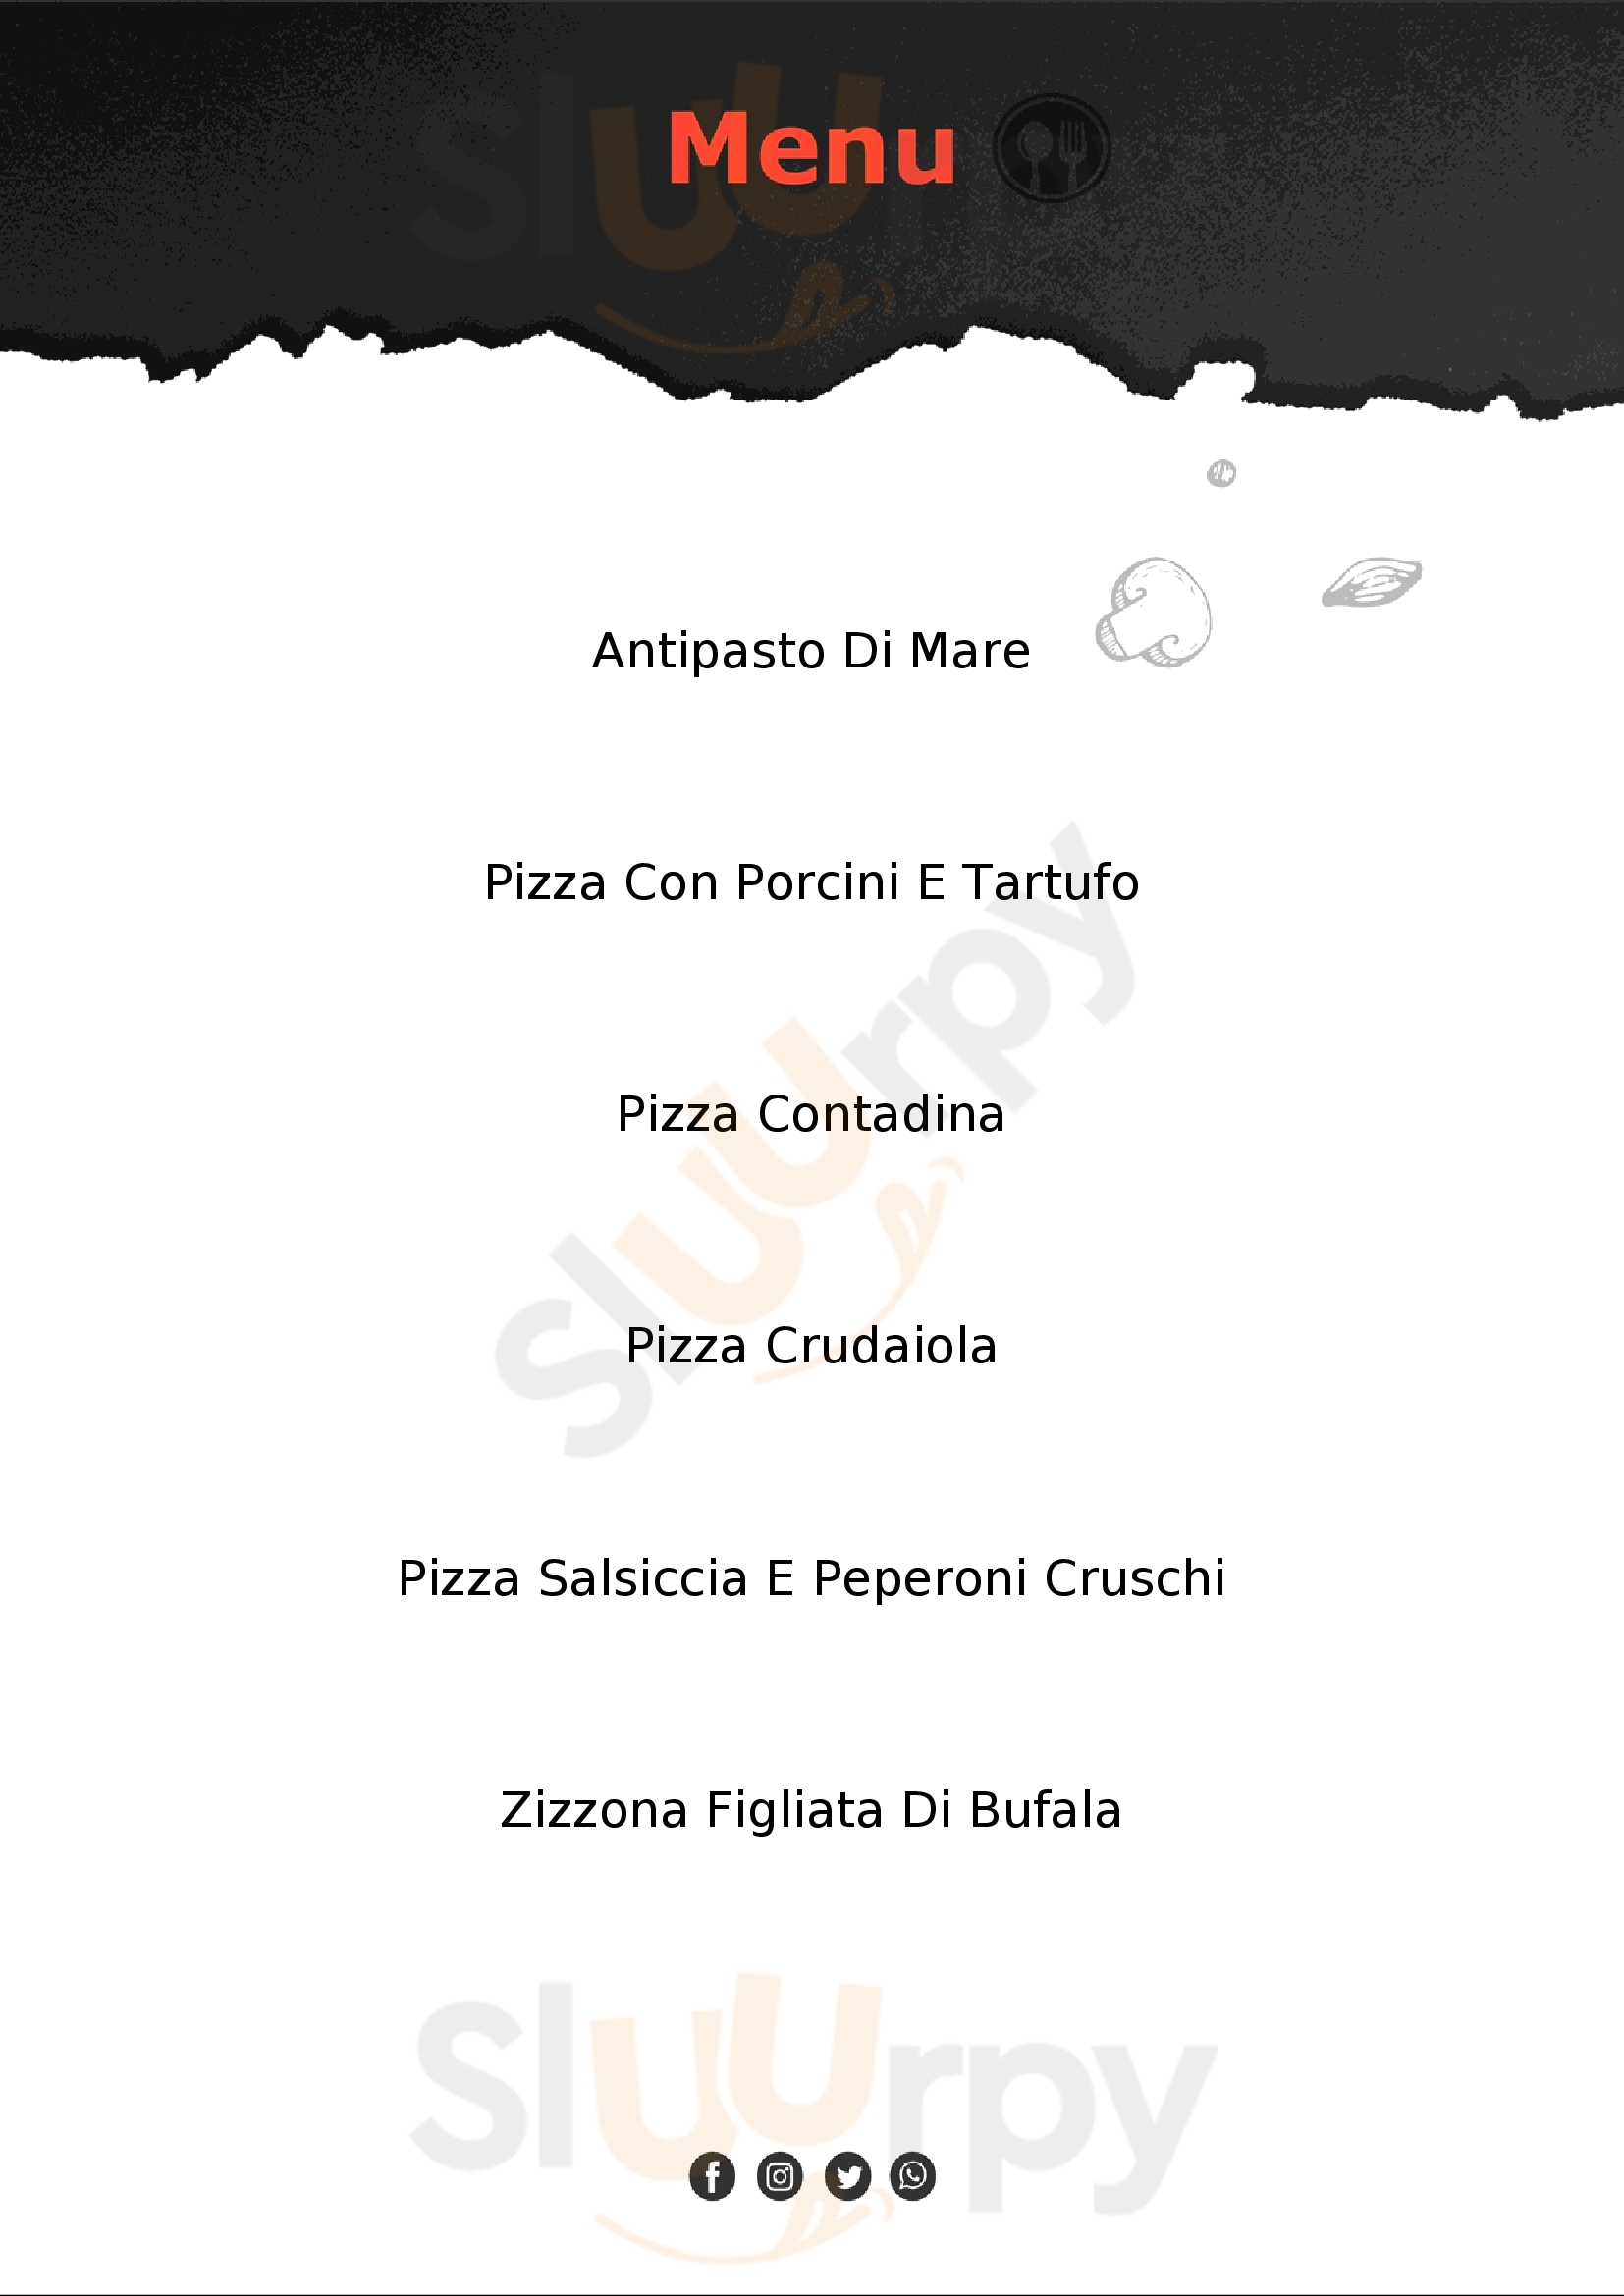 598 - Ristorante Pizzeria Brienza menù 1 pagina